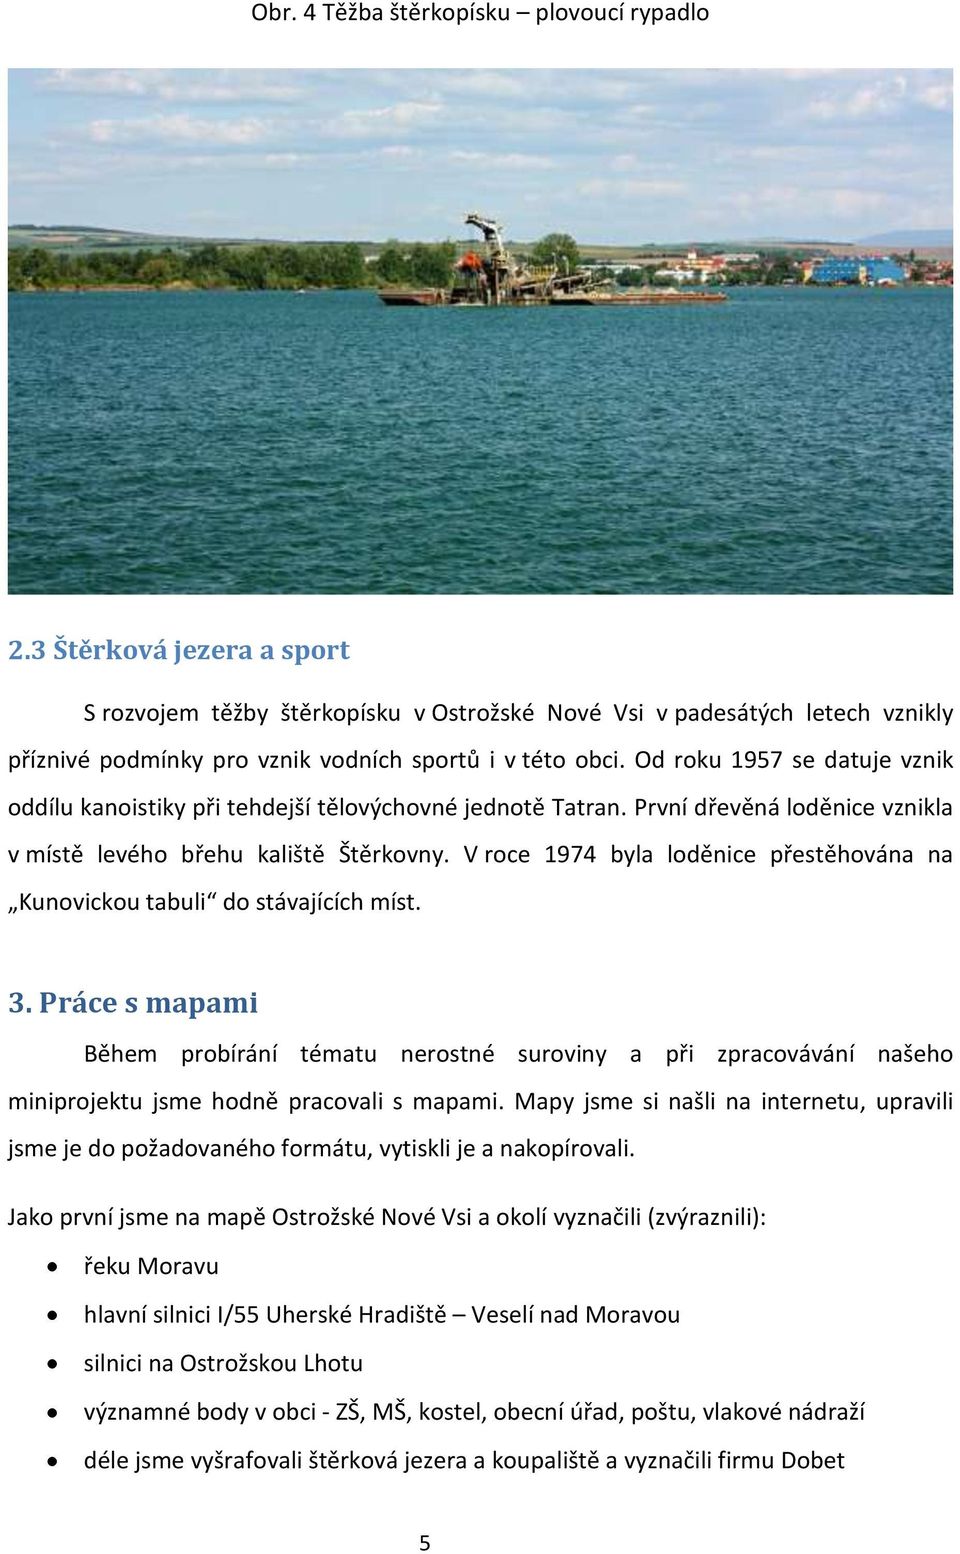 Od roku 1957 se datuje vznik oddílu kanoistiky při tehdejší tělovýchovné jednotě Tatran. První dřevěná loděnice vznikla v místě levého břehu kaliště Štěrkovny.